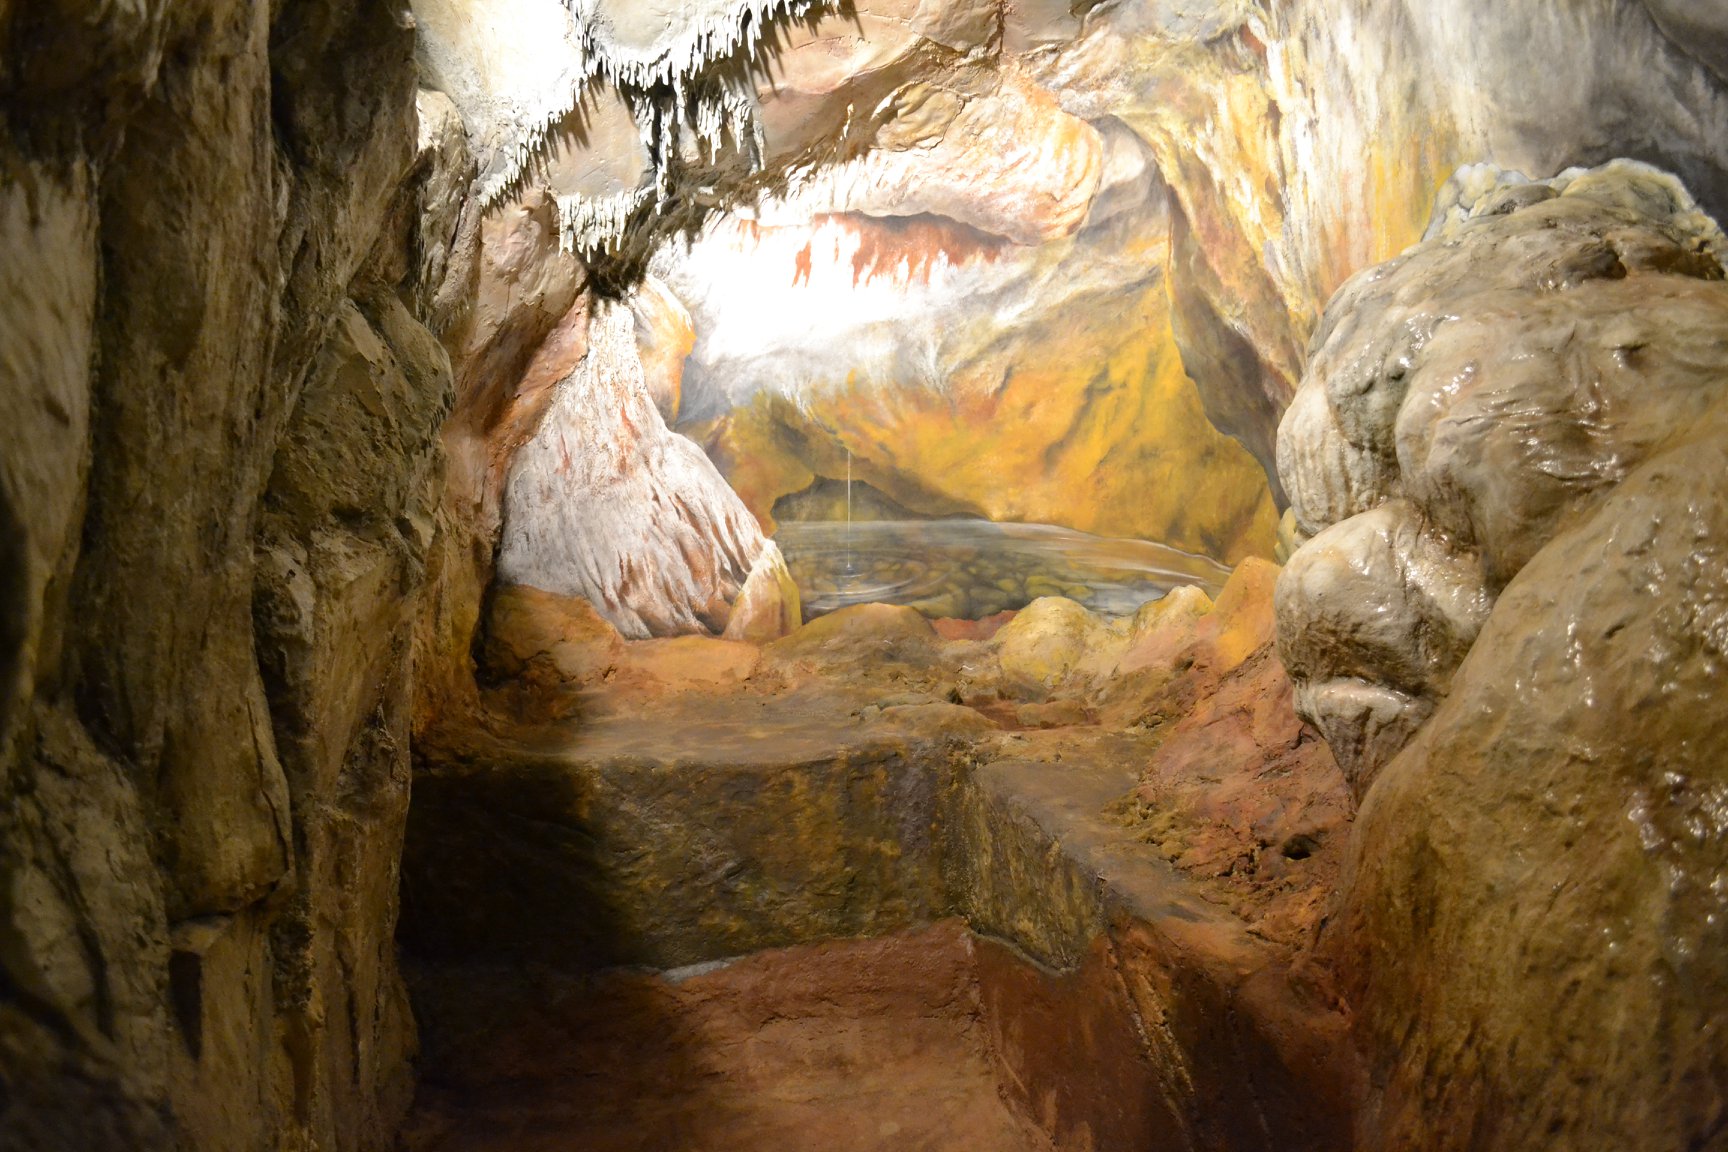 Museo di Storia Naturale: inaugurazione del nuovo allestimento “Grotta del Leone, l’uomo preistorico sul Monte Pisano”